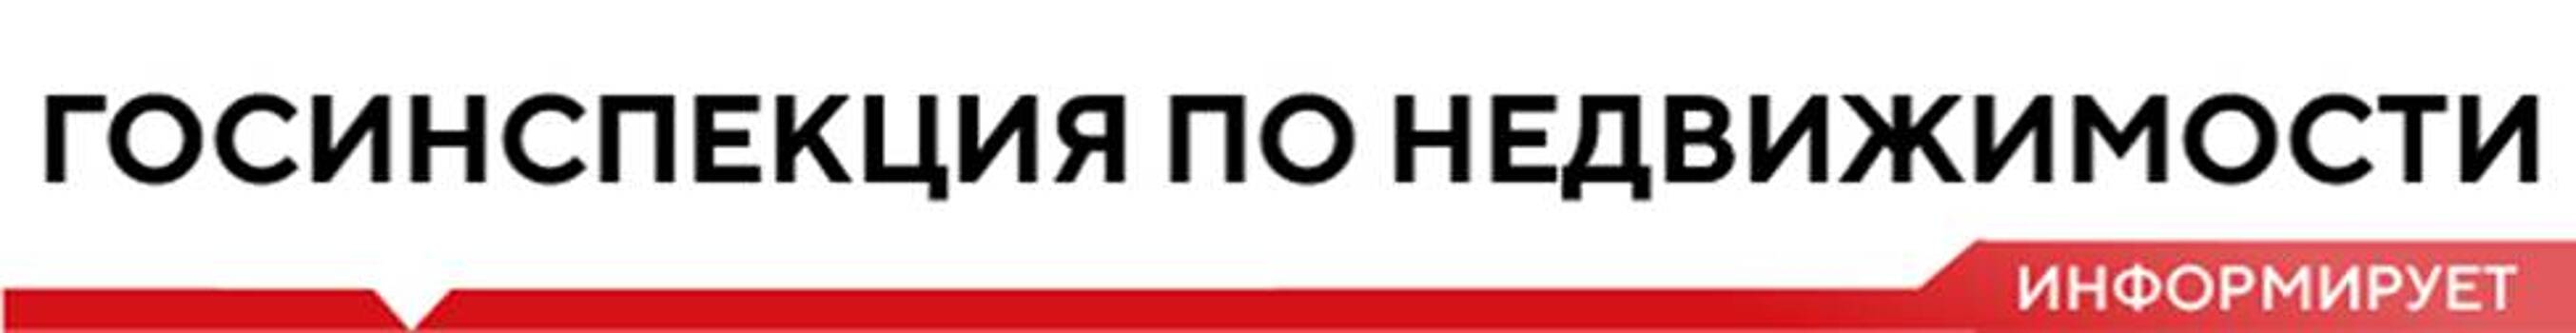 Москве состоится вебинар об использовании земель под ИЖС